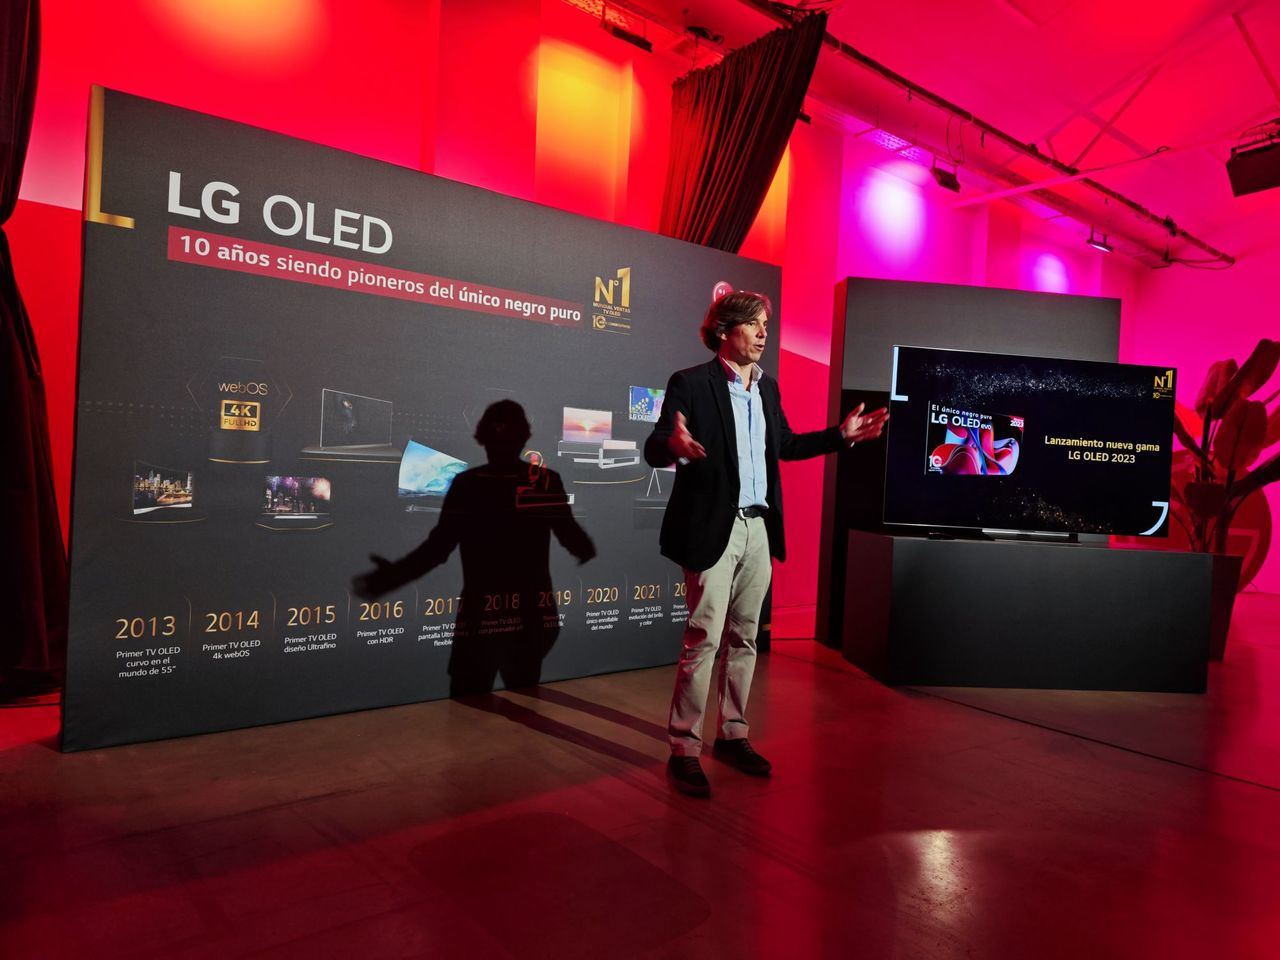 LG OLED cumple 10 años y lo celebra con una nueva gama de televisores